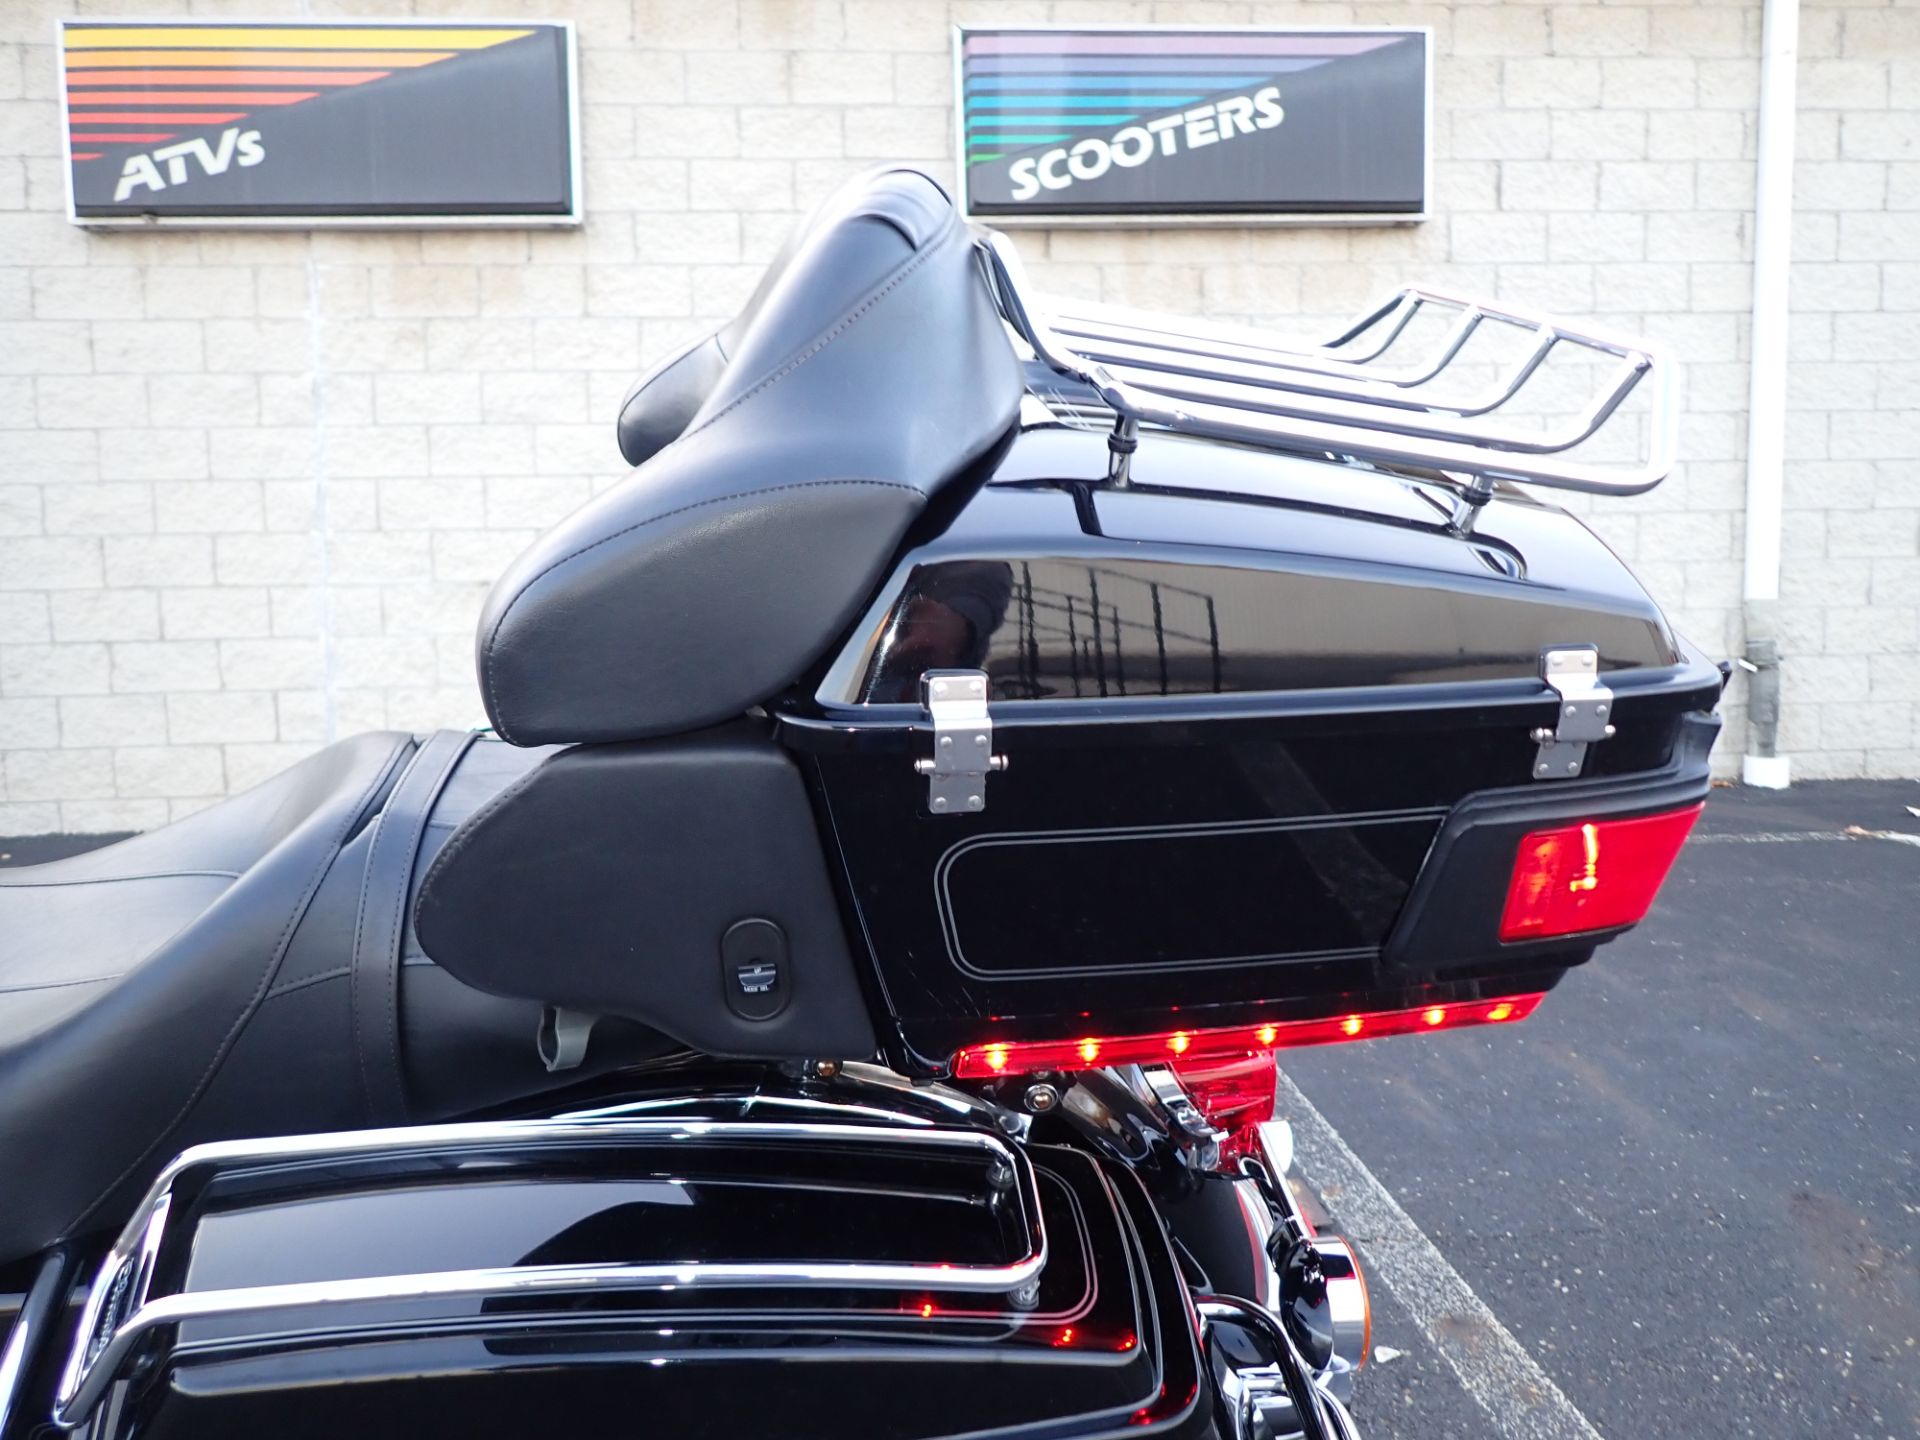 2009 Harley-Davidson Ultra Classic® Electra Glide® in Massillon, Ohio - Photo 18